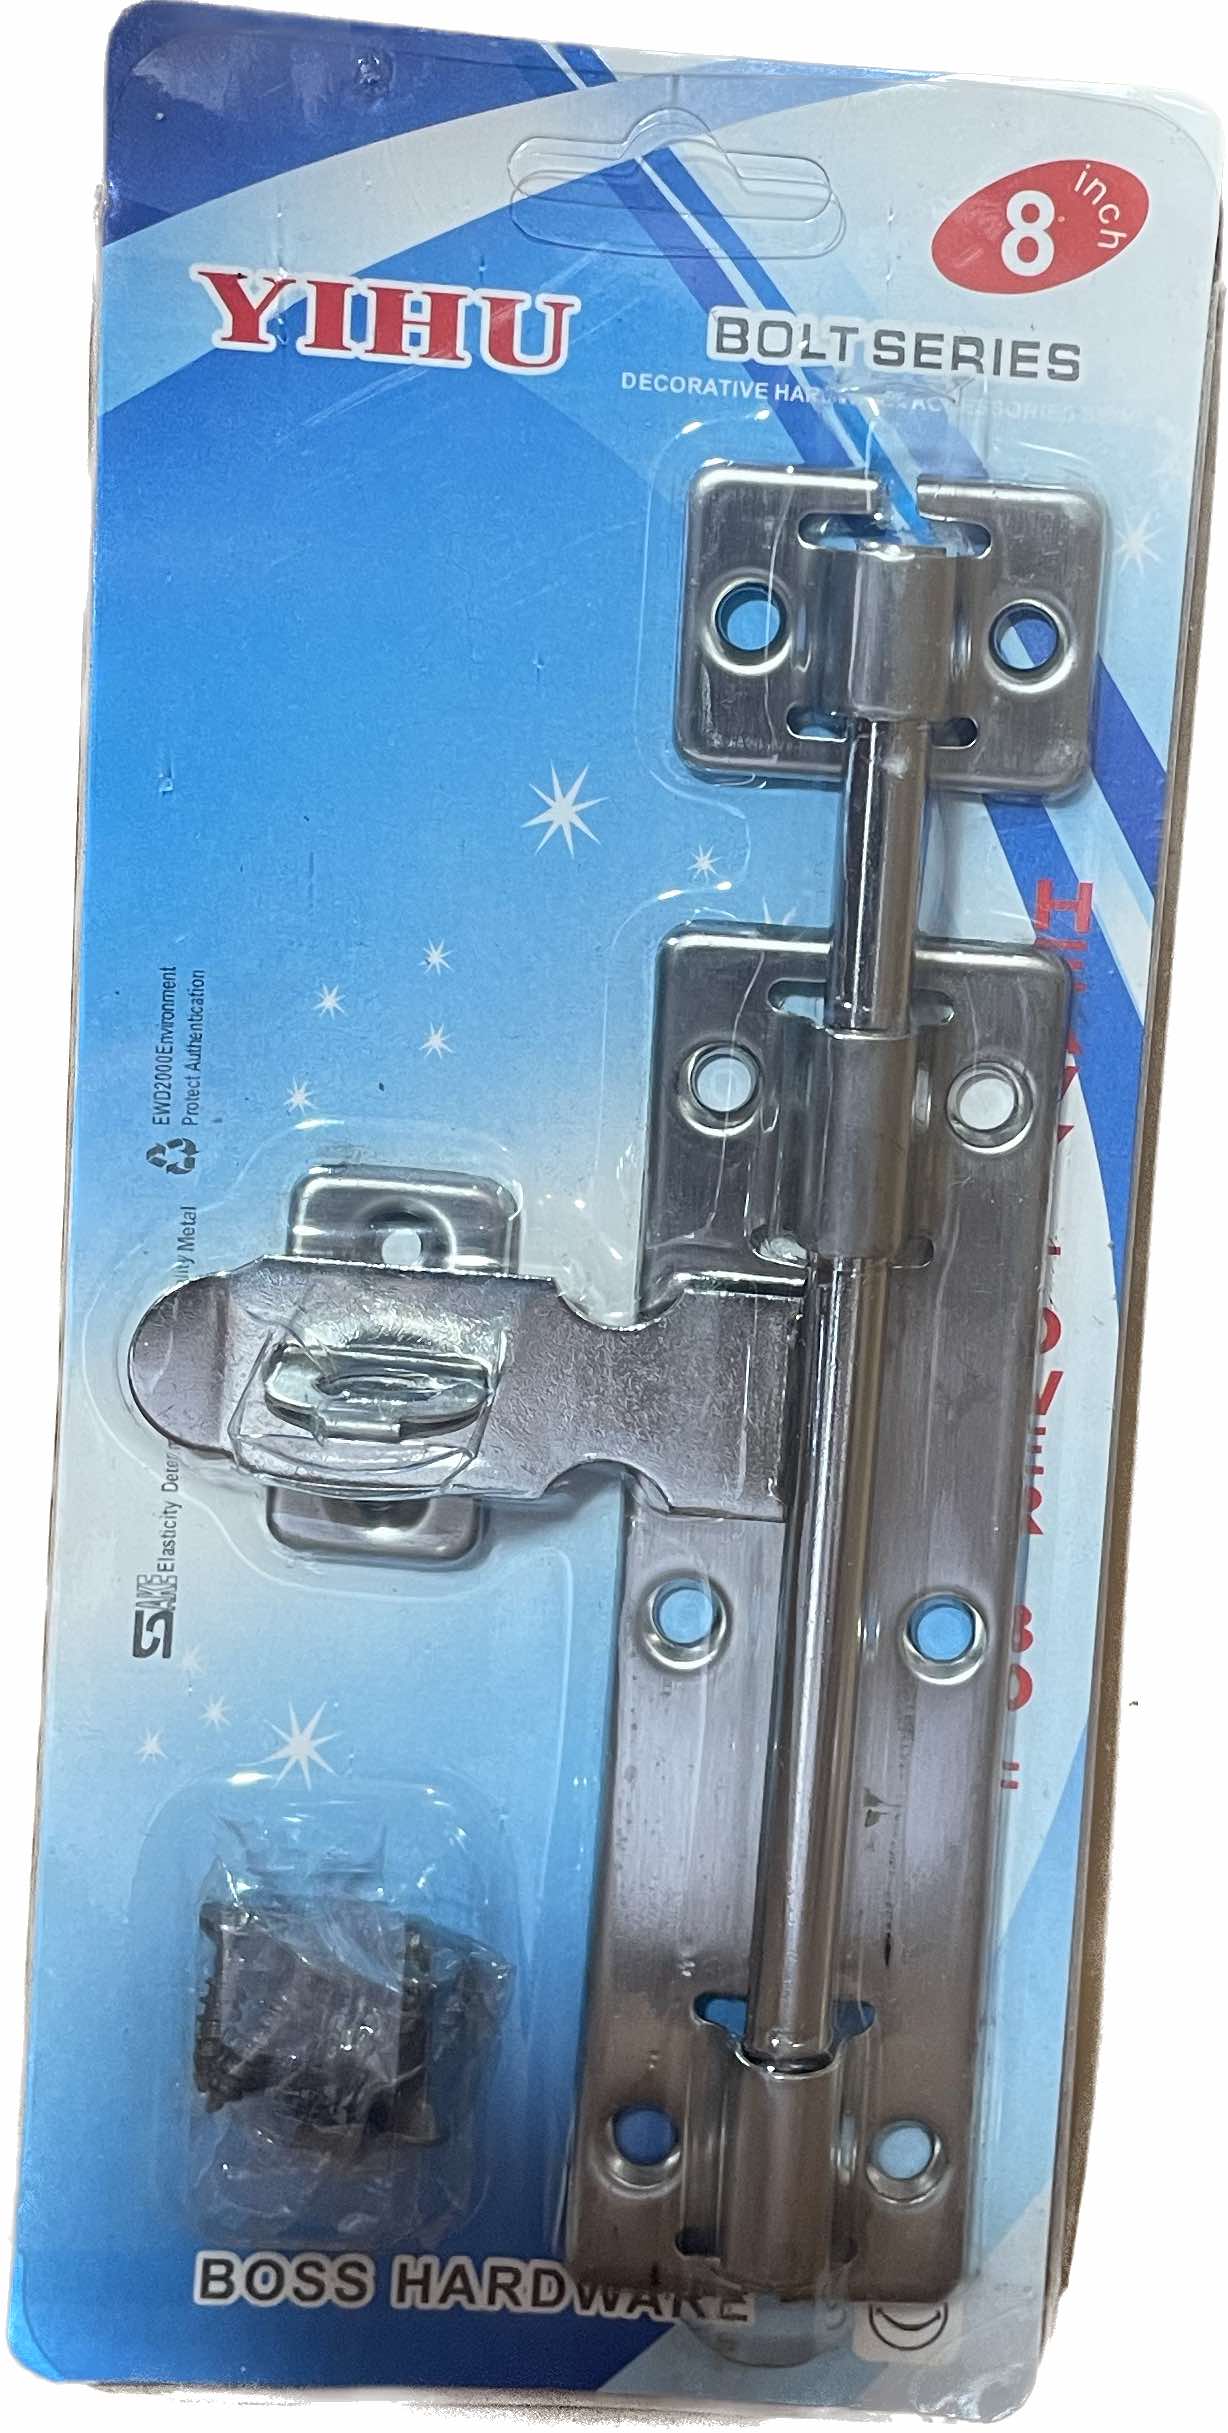 Συρτής μεταλλικός πόρτας με υποδοχή για κλειδαριά 15 cm